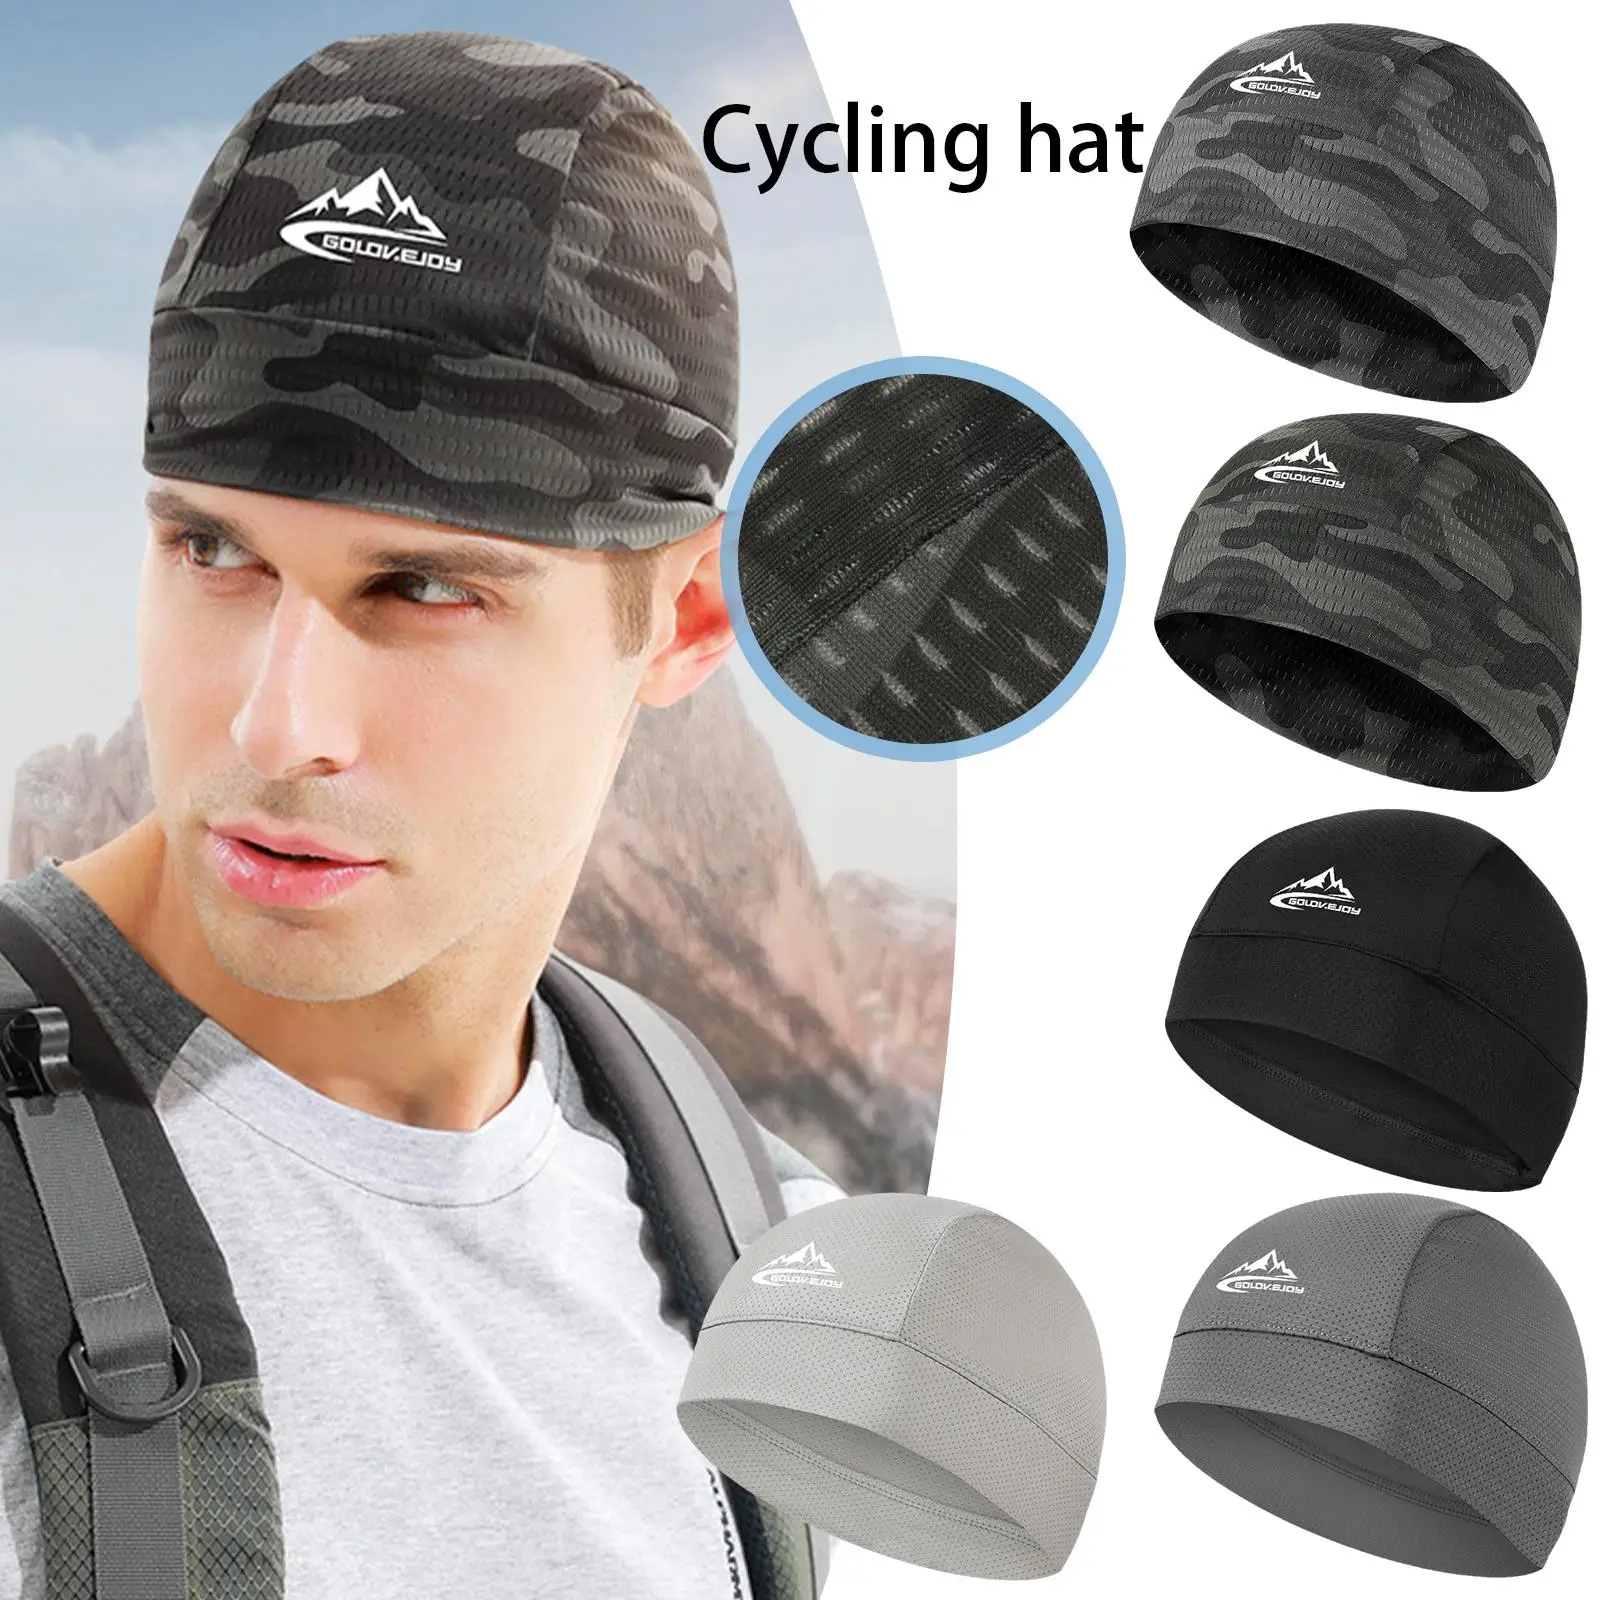 

Охлаждающая шапка с черепом, подкладка шлема, дышащая, впитывающая пот, удобная велосипедная шапка, спортивная шапка для улицы, шапка для бега, велоспорта, пешего туризма C9o3